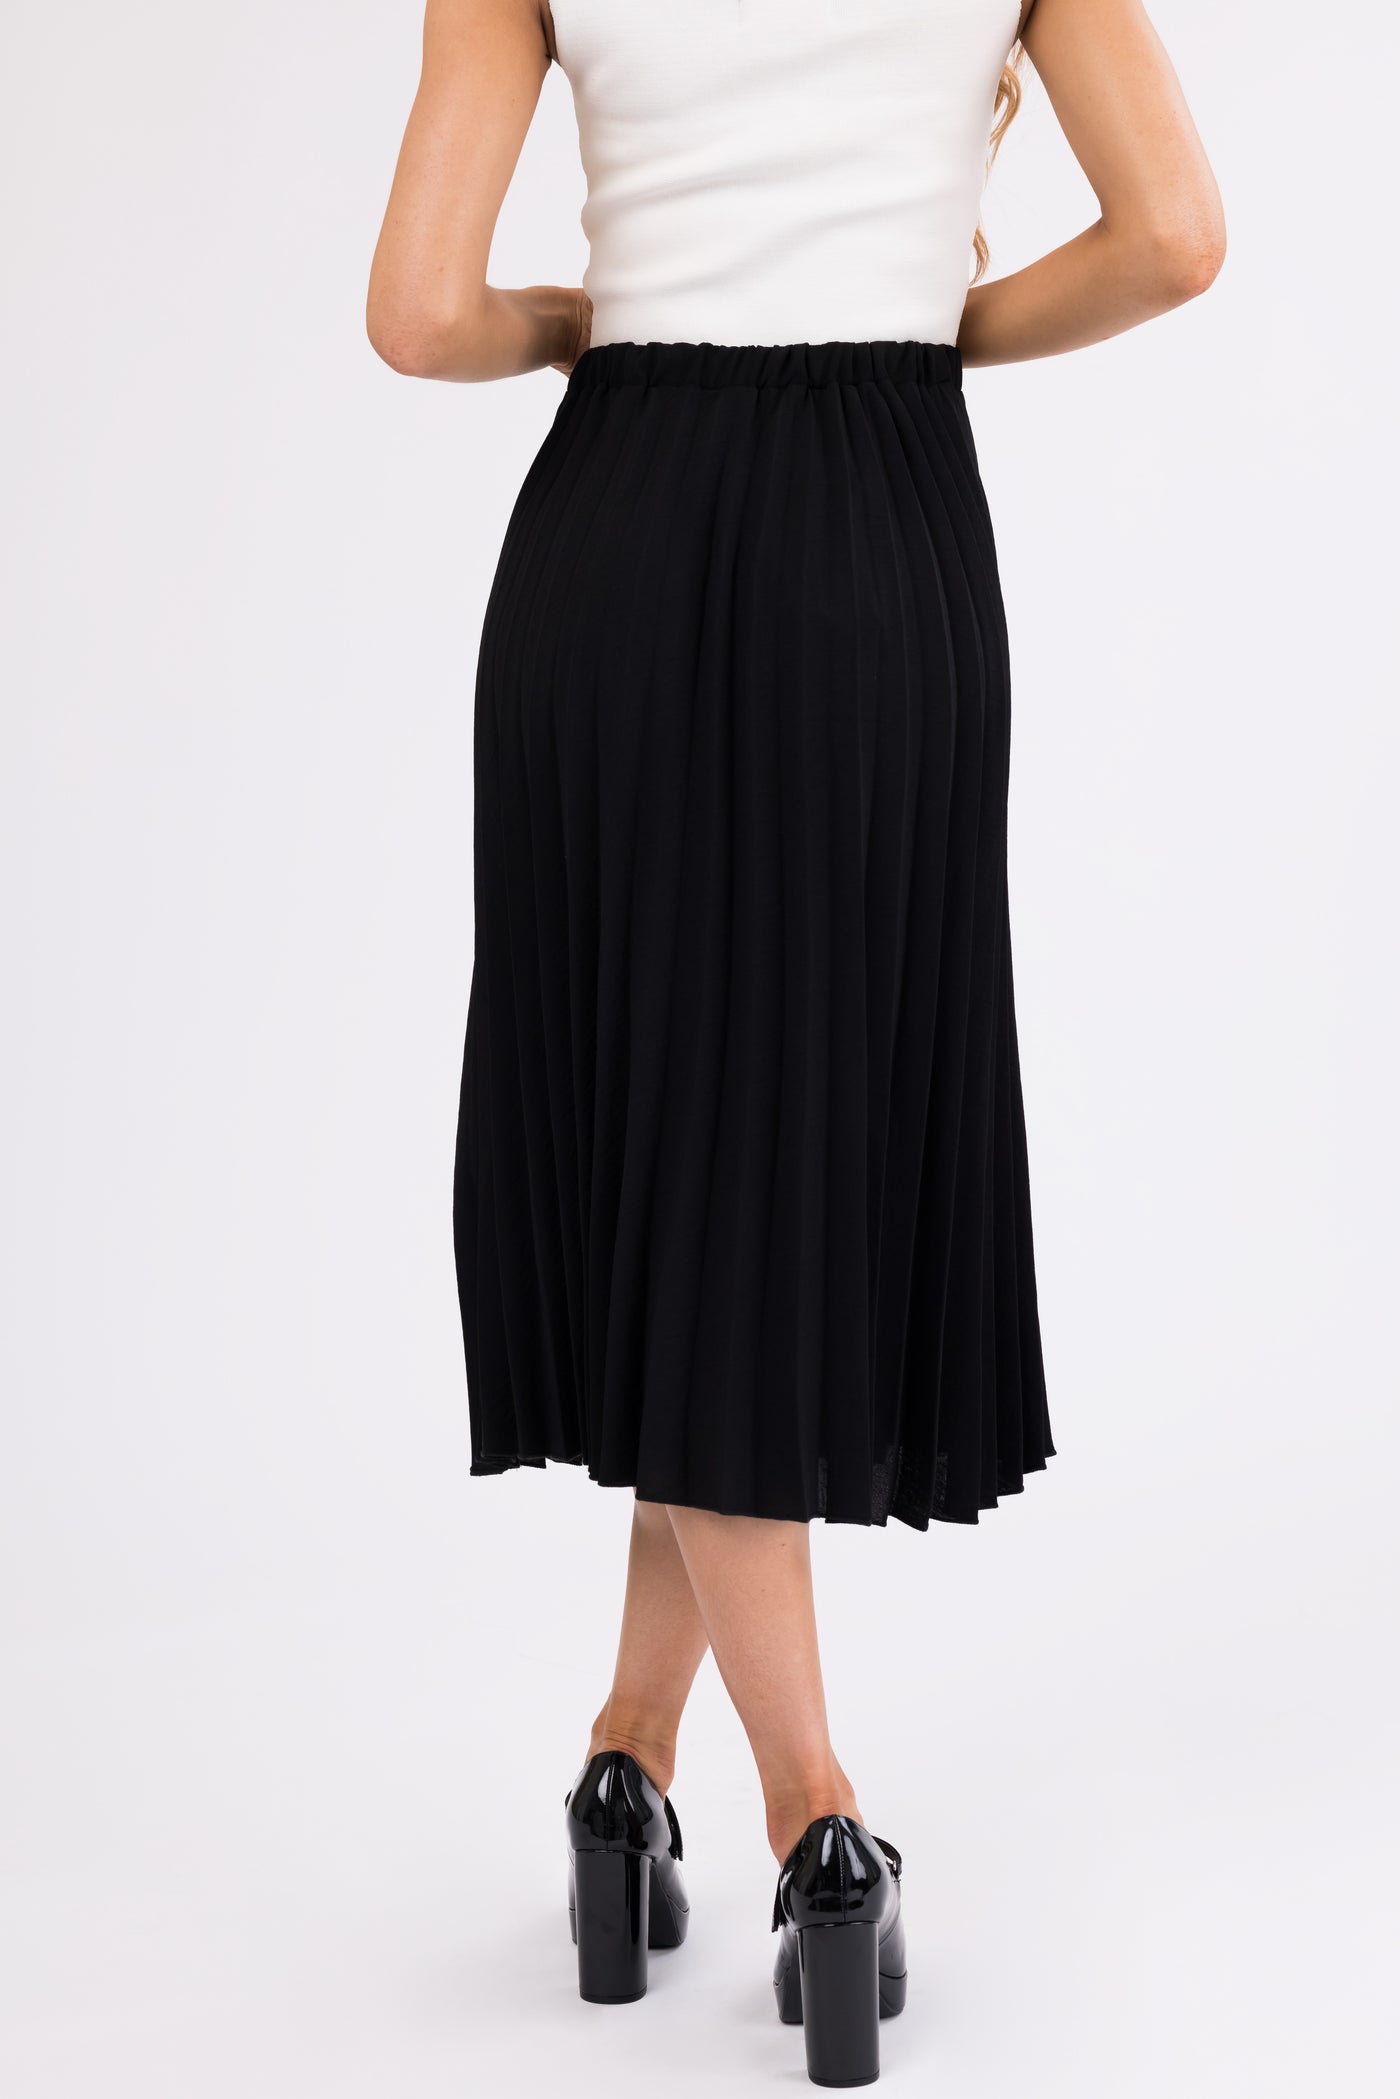 Black Pleated Elastic Waist Midi Skirt